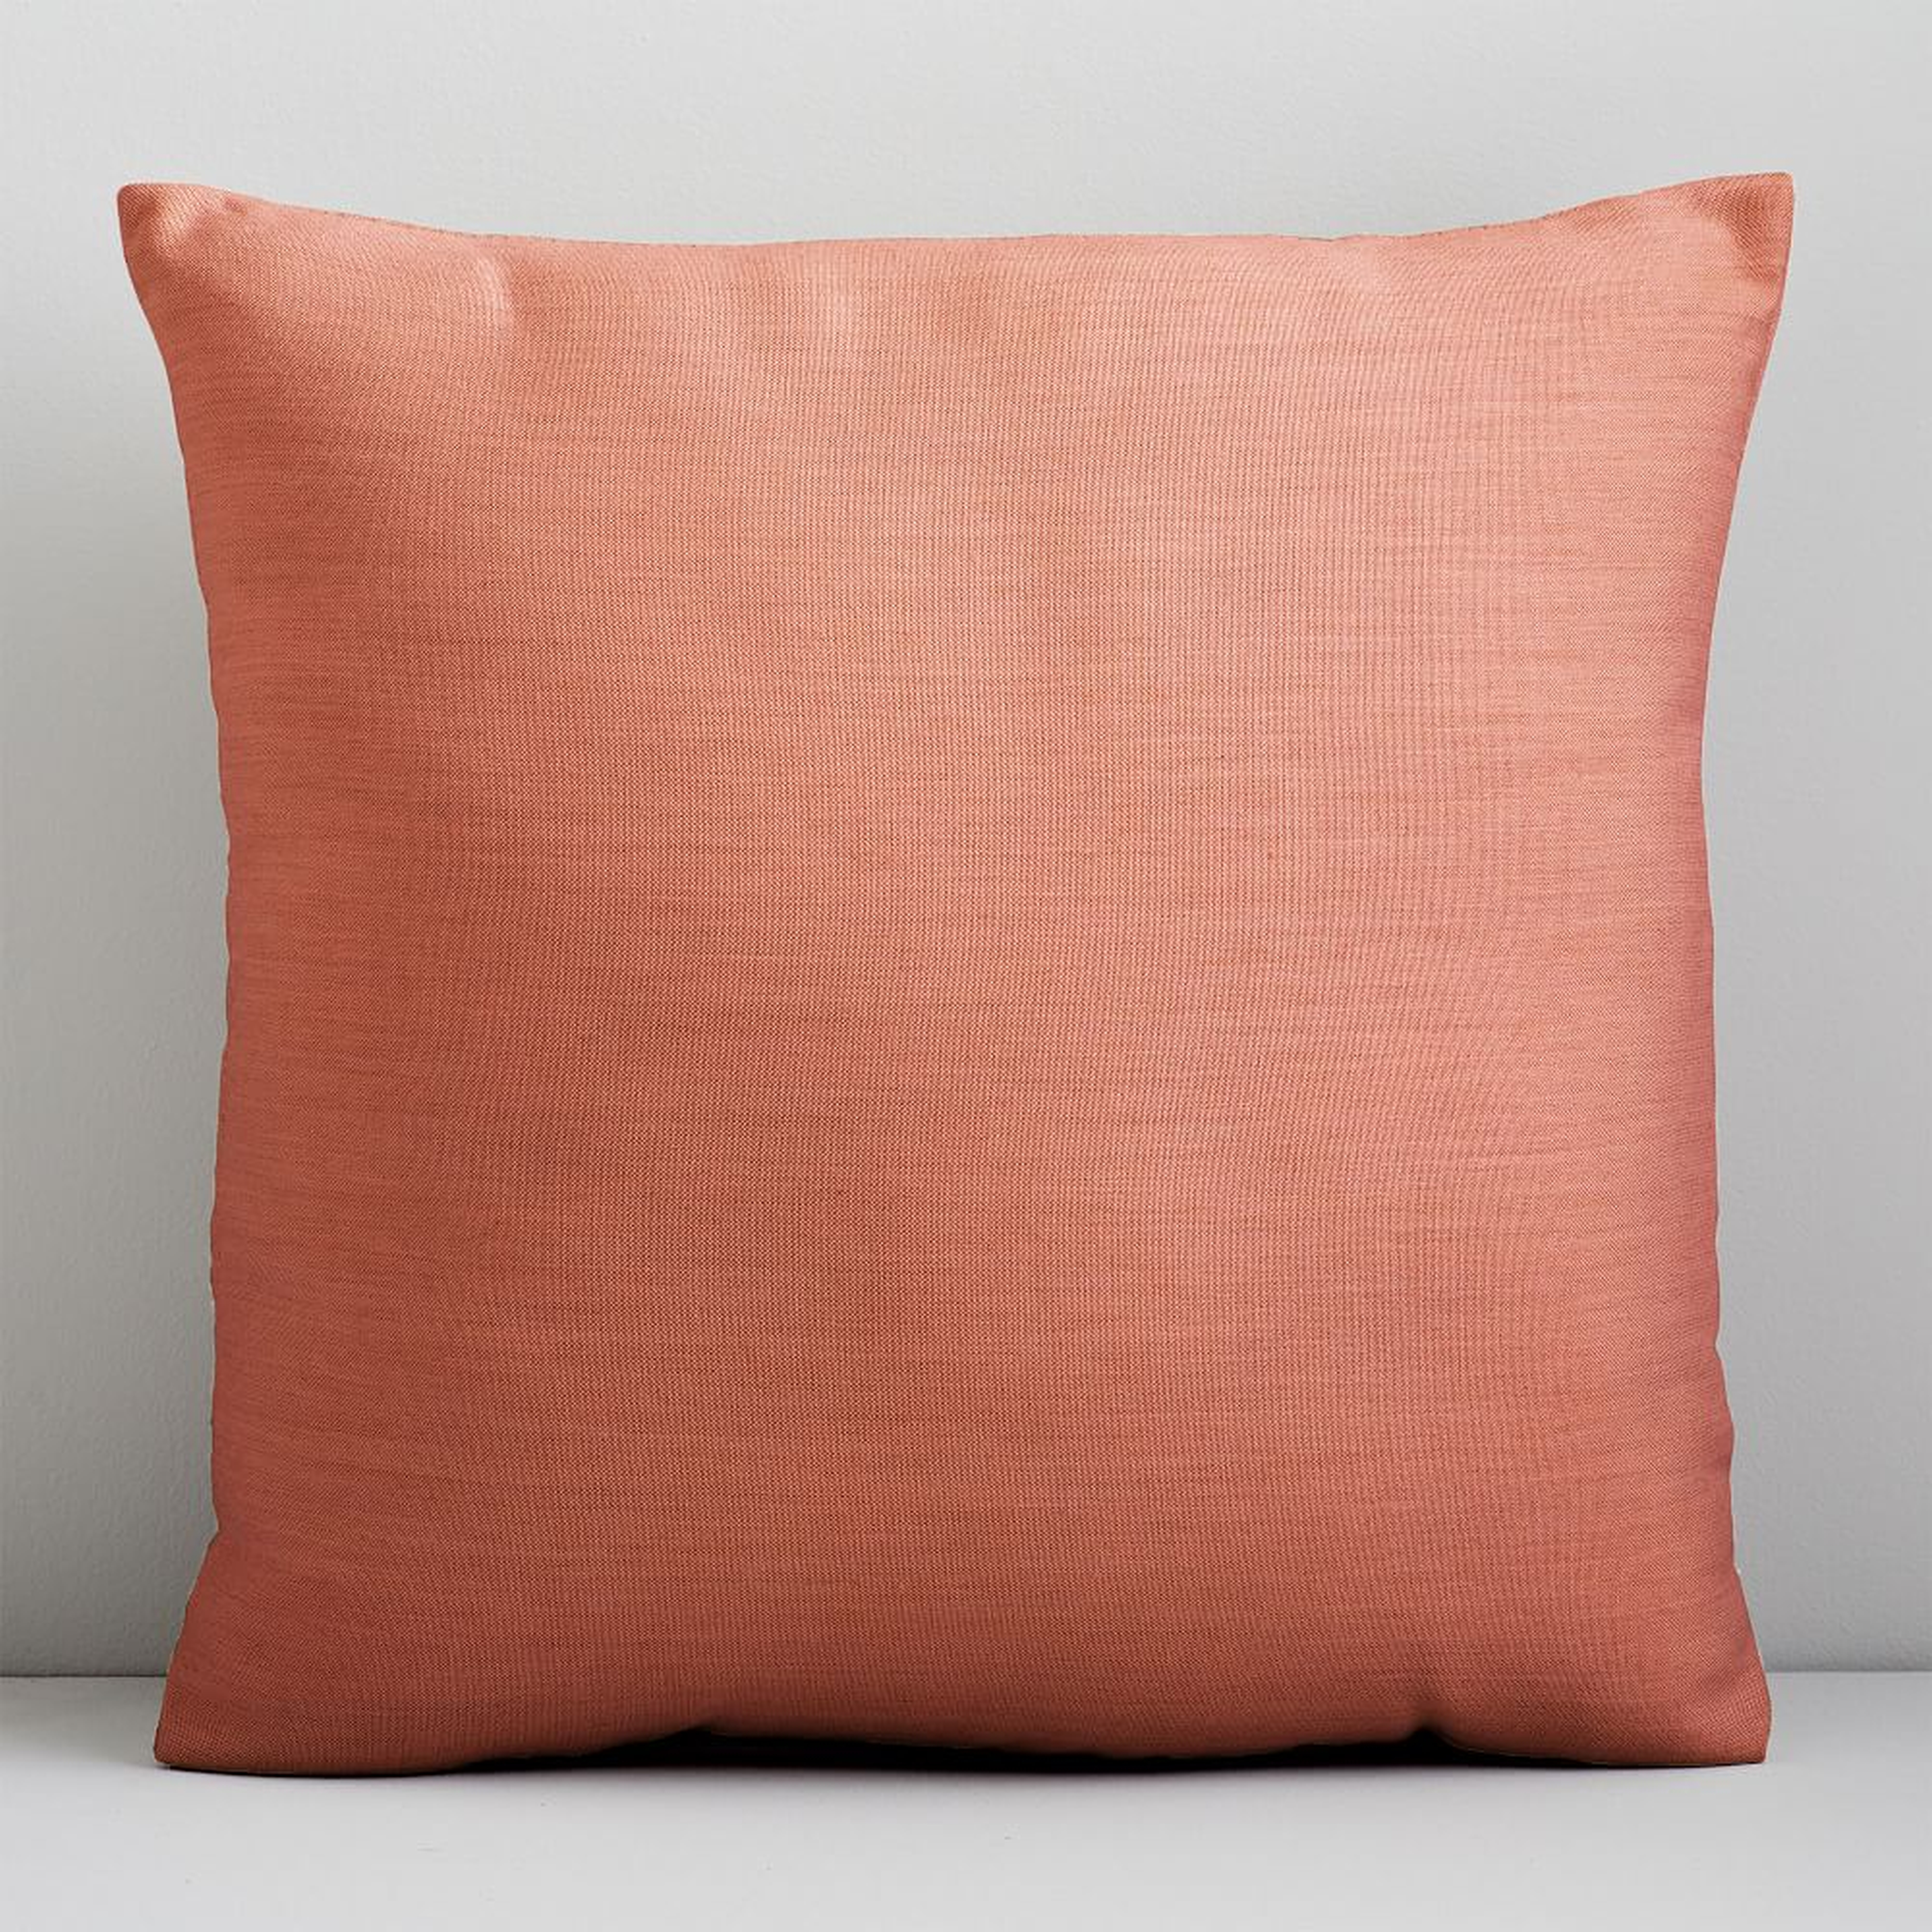 Sunbrella Indoor/Outdoor Cast Pillow, 18"x18", Coral - West Elm